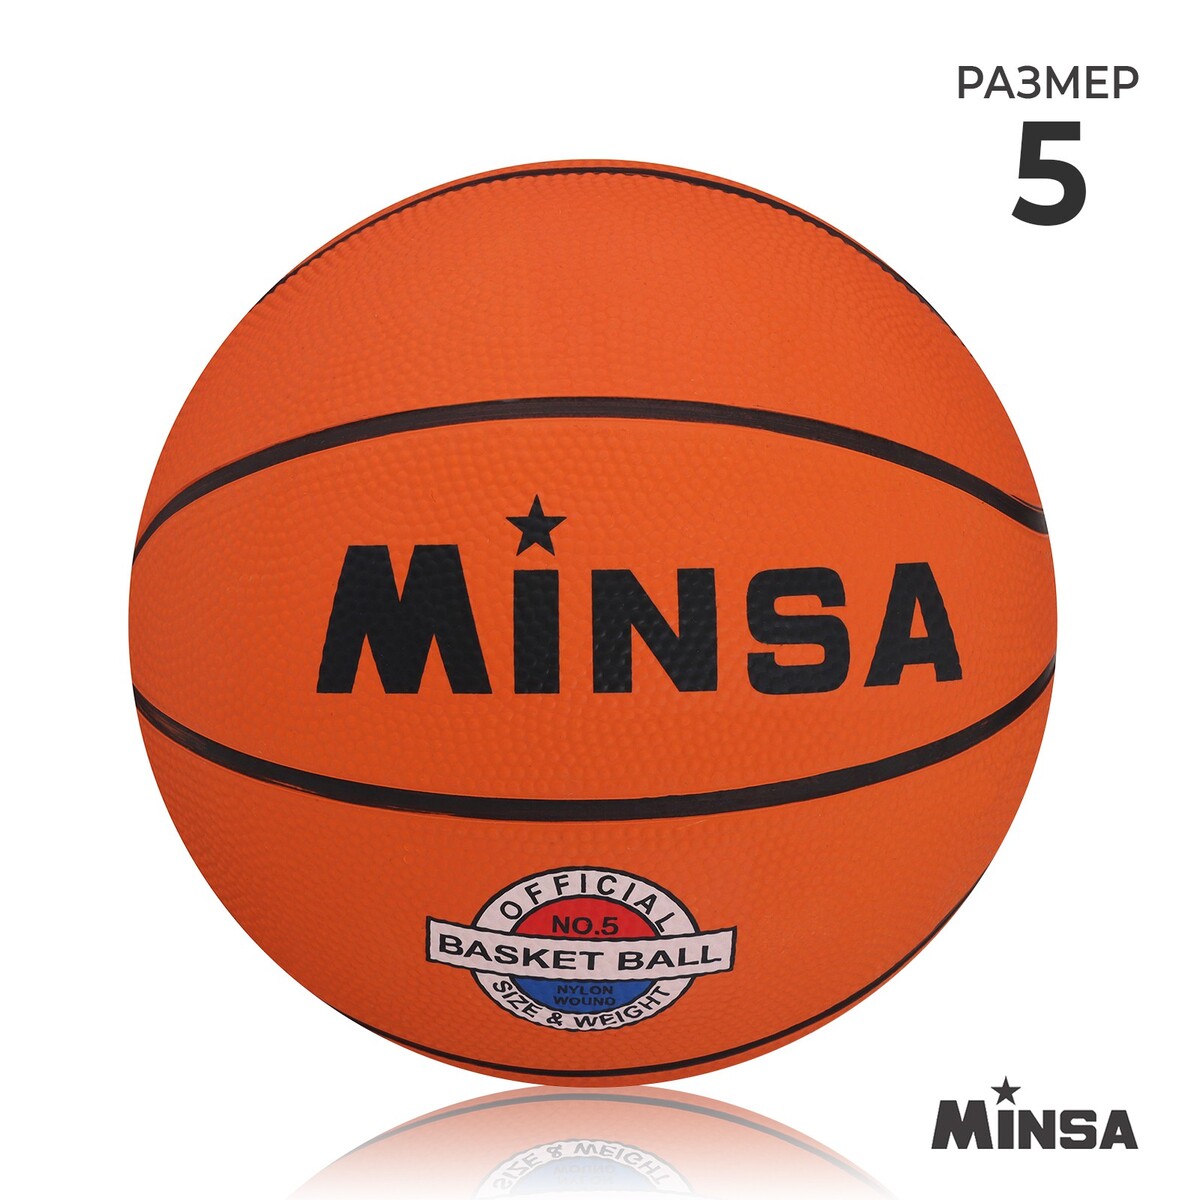 Мяч баскетбольный minsa sport, пвх, клееный, 8 панелей, р. 5 мяч баскетбольный minsa пвх клееный 8 панелей р 5